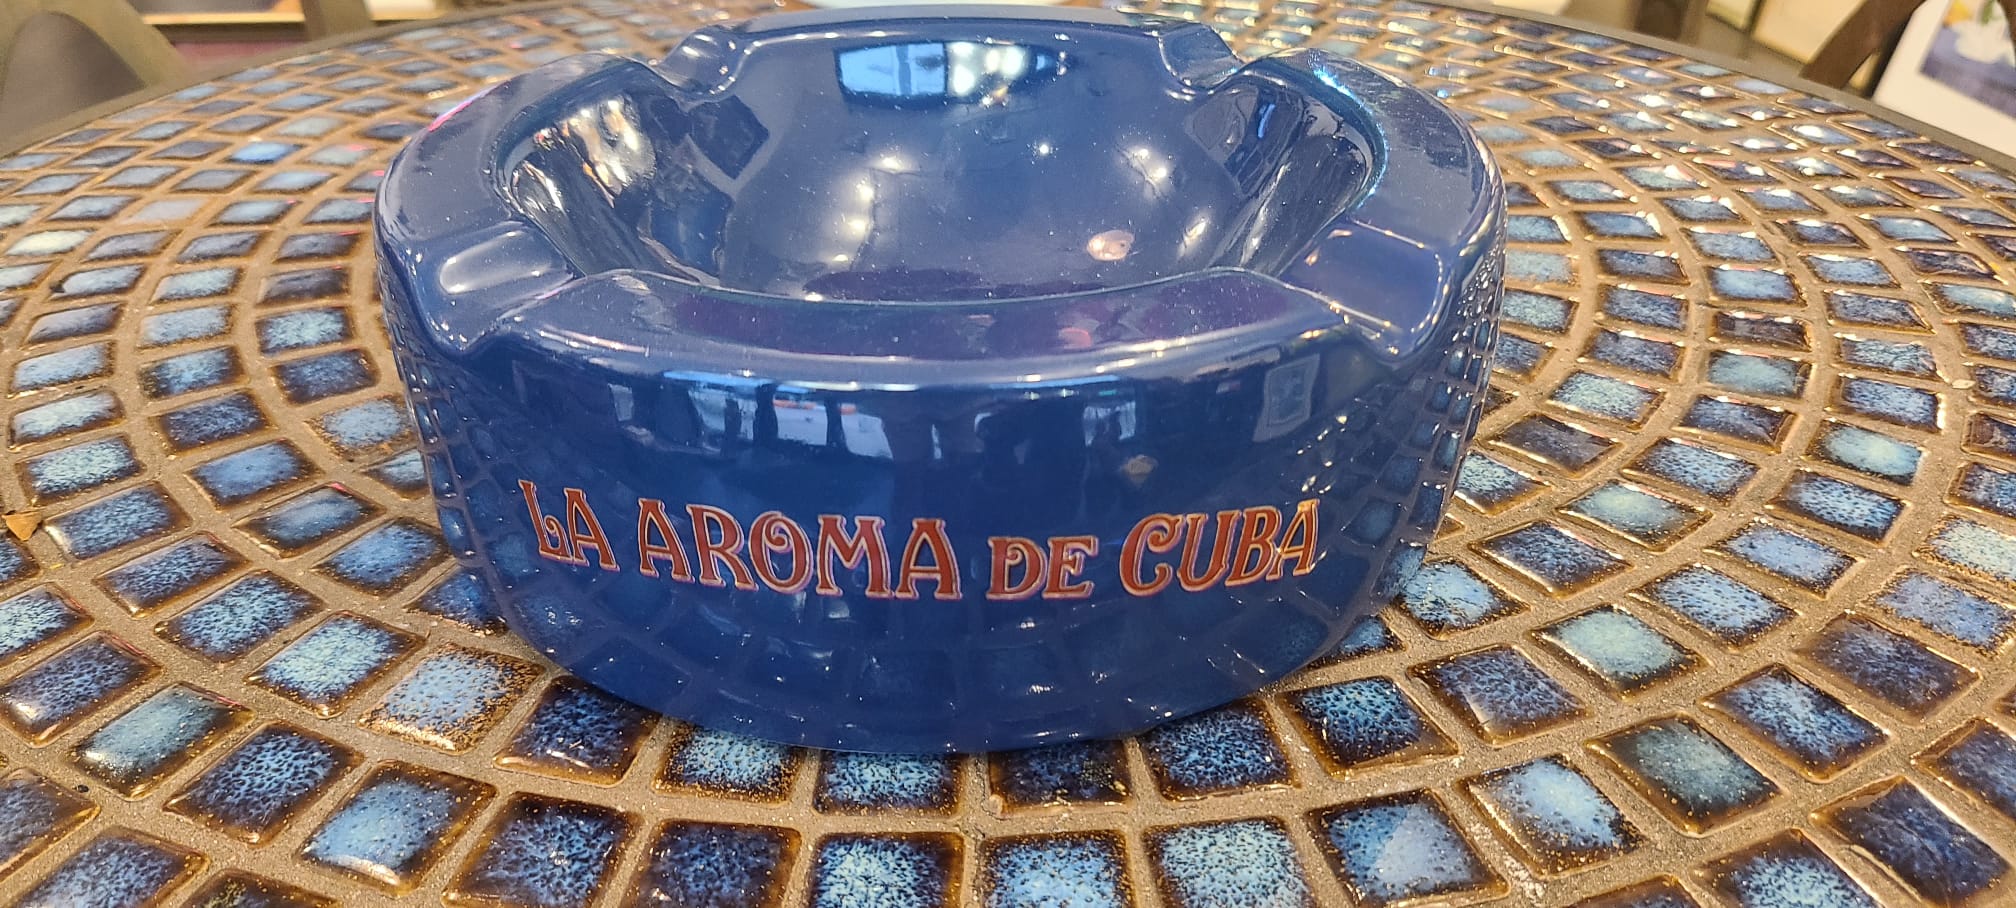 La Aroma De Cuba Ashtray